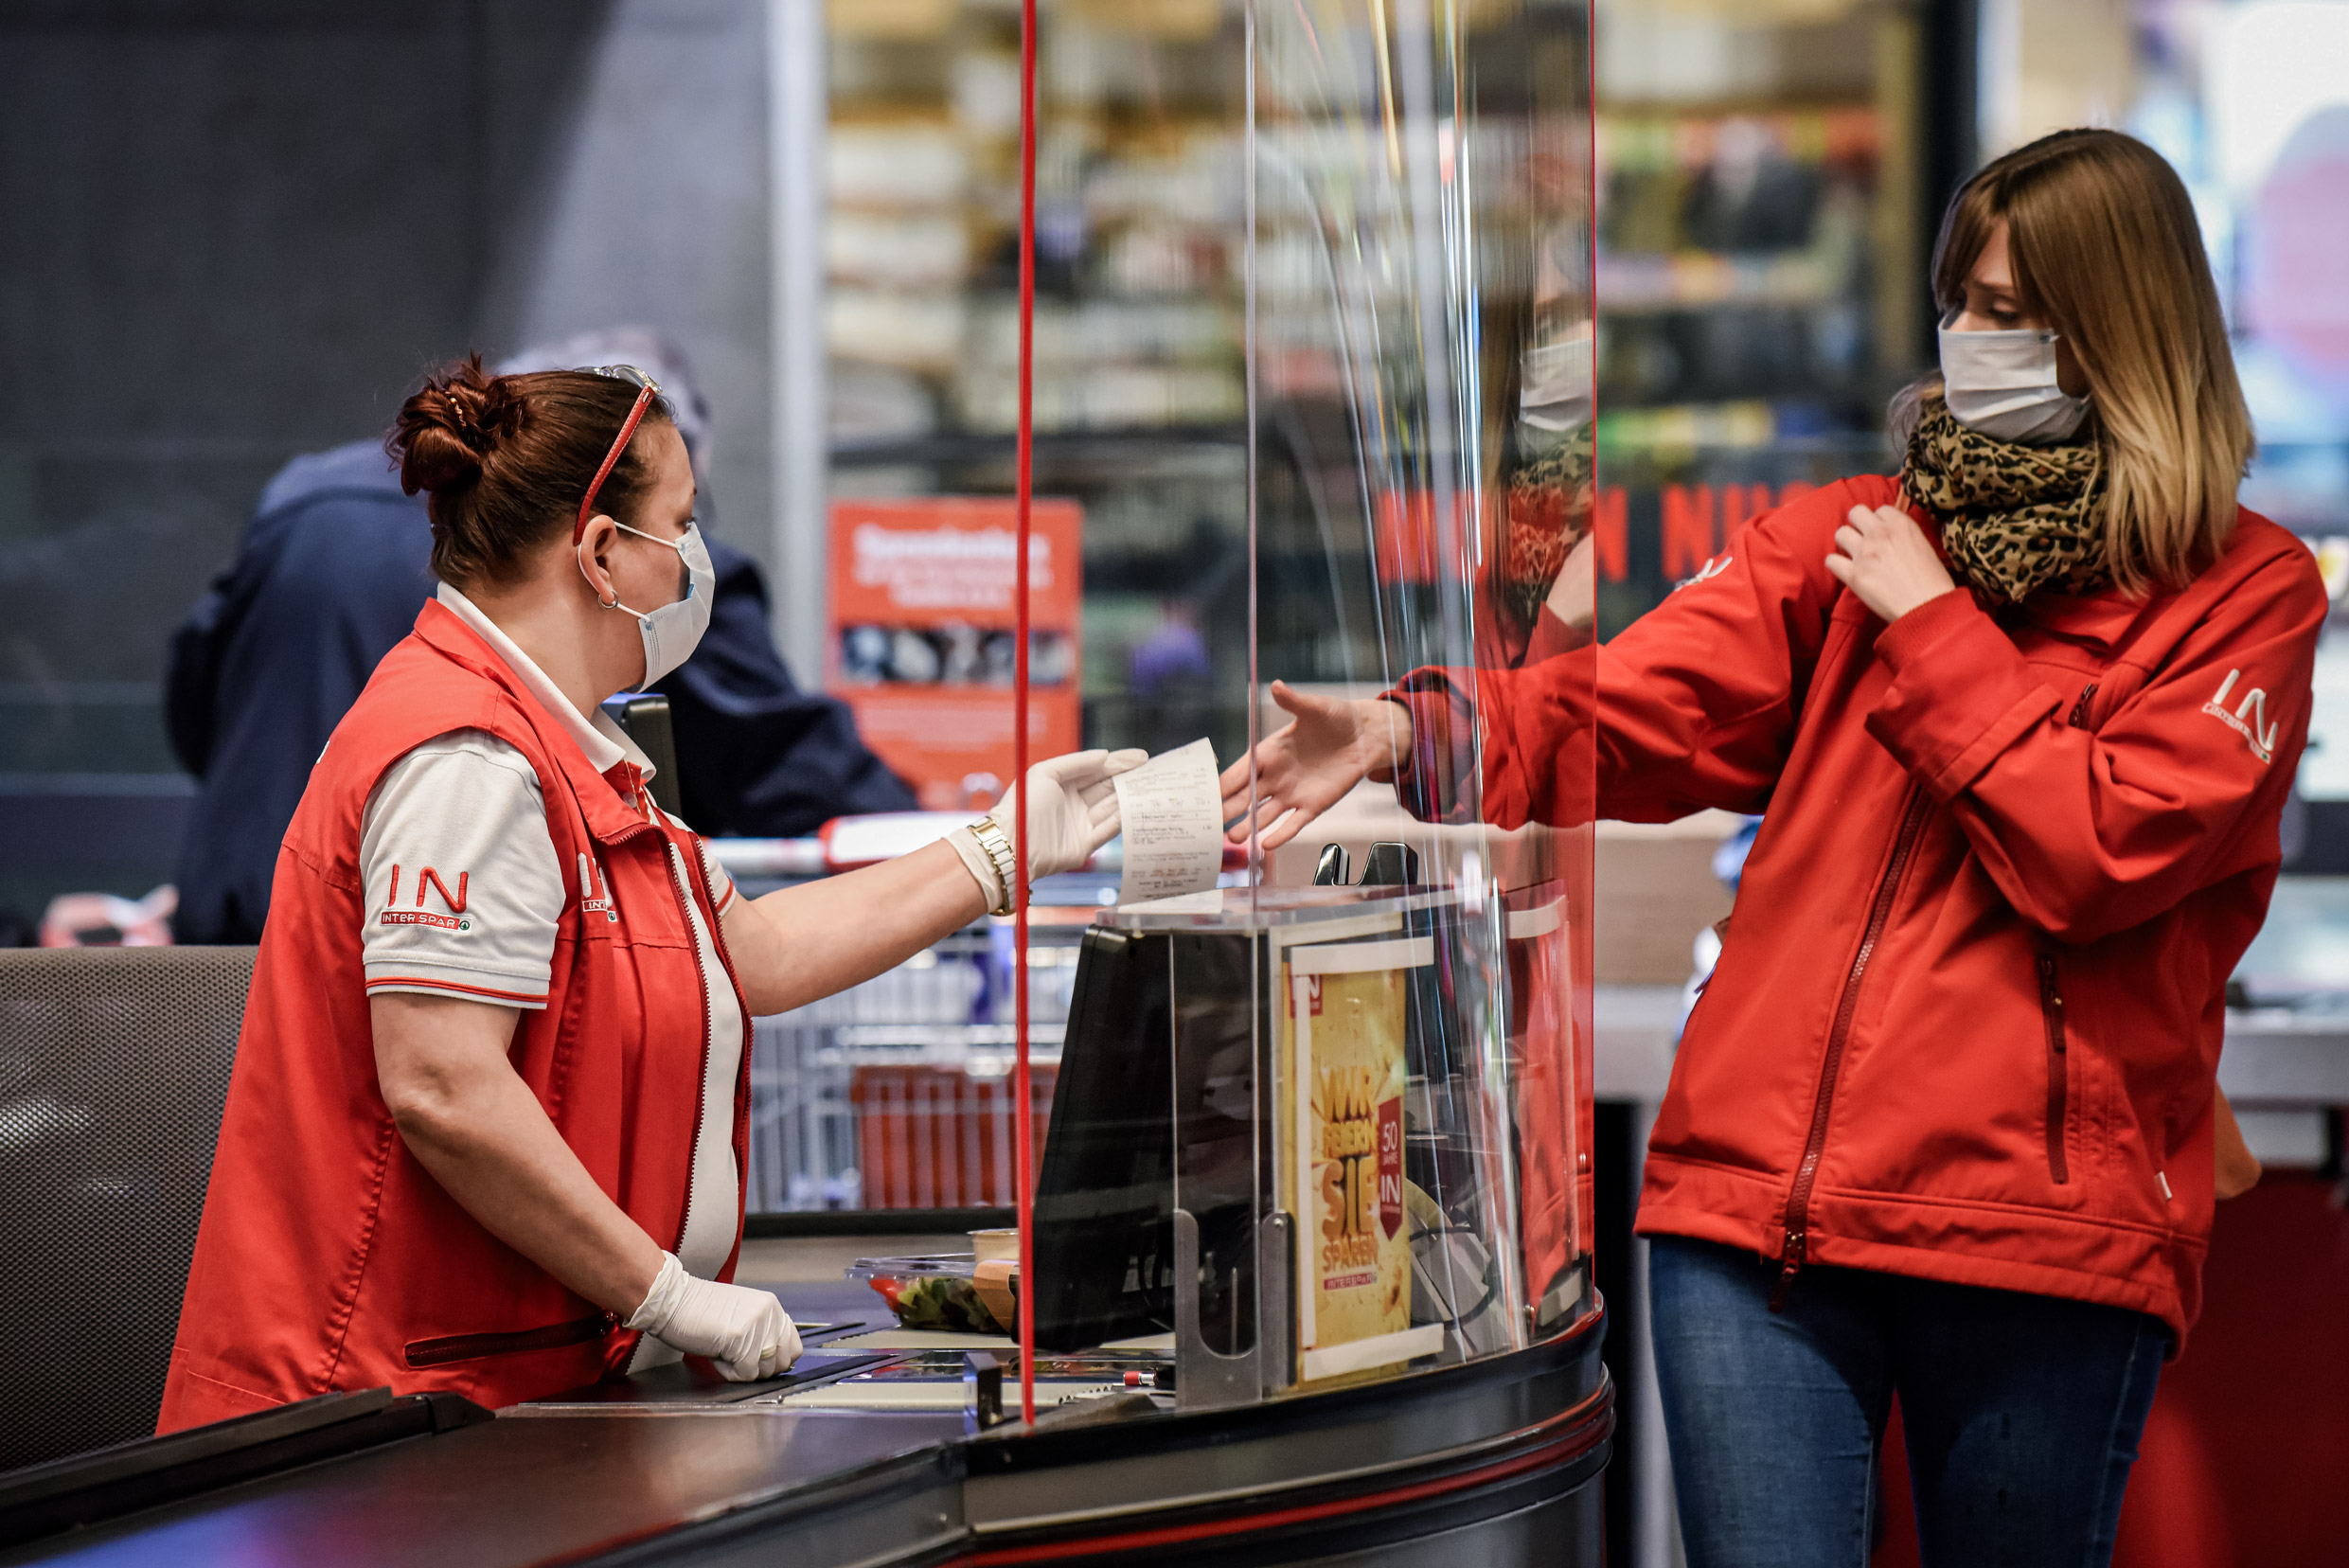 Một khách hàng đeo khẩu trang tại quầy thu ngân trong siêu thị ở Vienna, Áo, vào ngày 01/04/2020. (Ảnh: Thomas Kronsteiner/Getty Images)